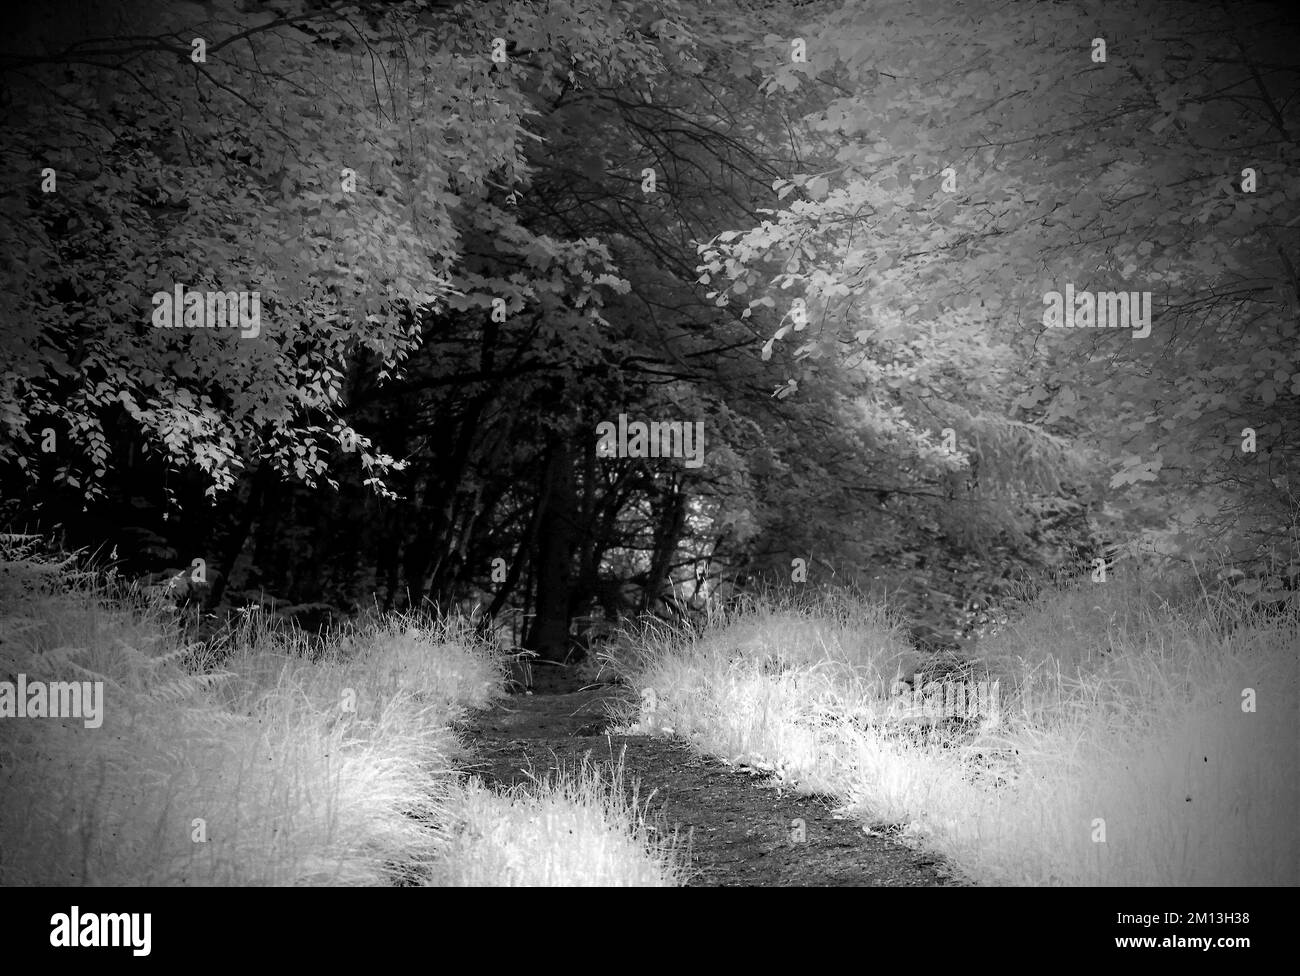 Monotone Fotografie von Bäumen, die den Fußweg flankieren, in den Wäldern im Cannock Chase AONB Gebiet von herausragender natürlicher Schönheit Stockfoto